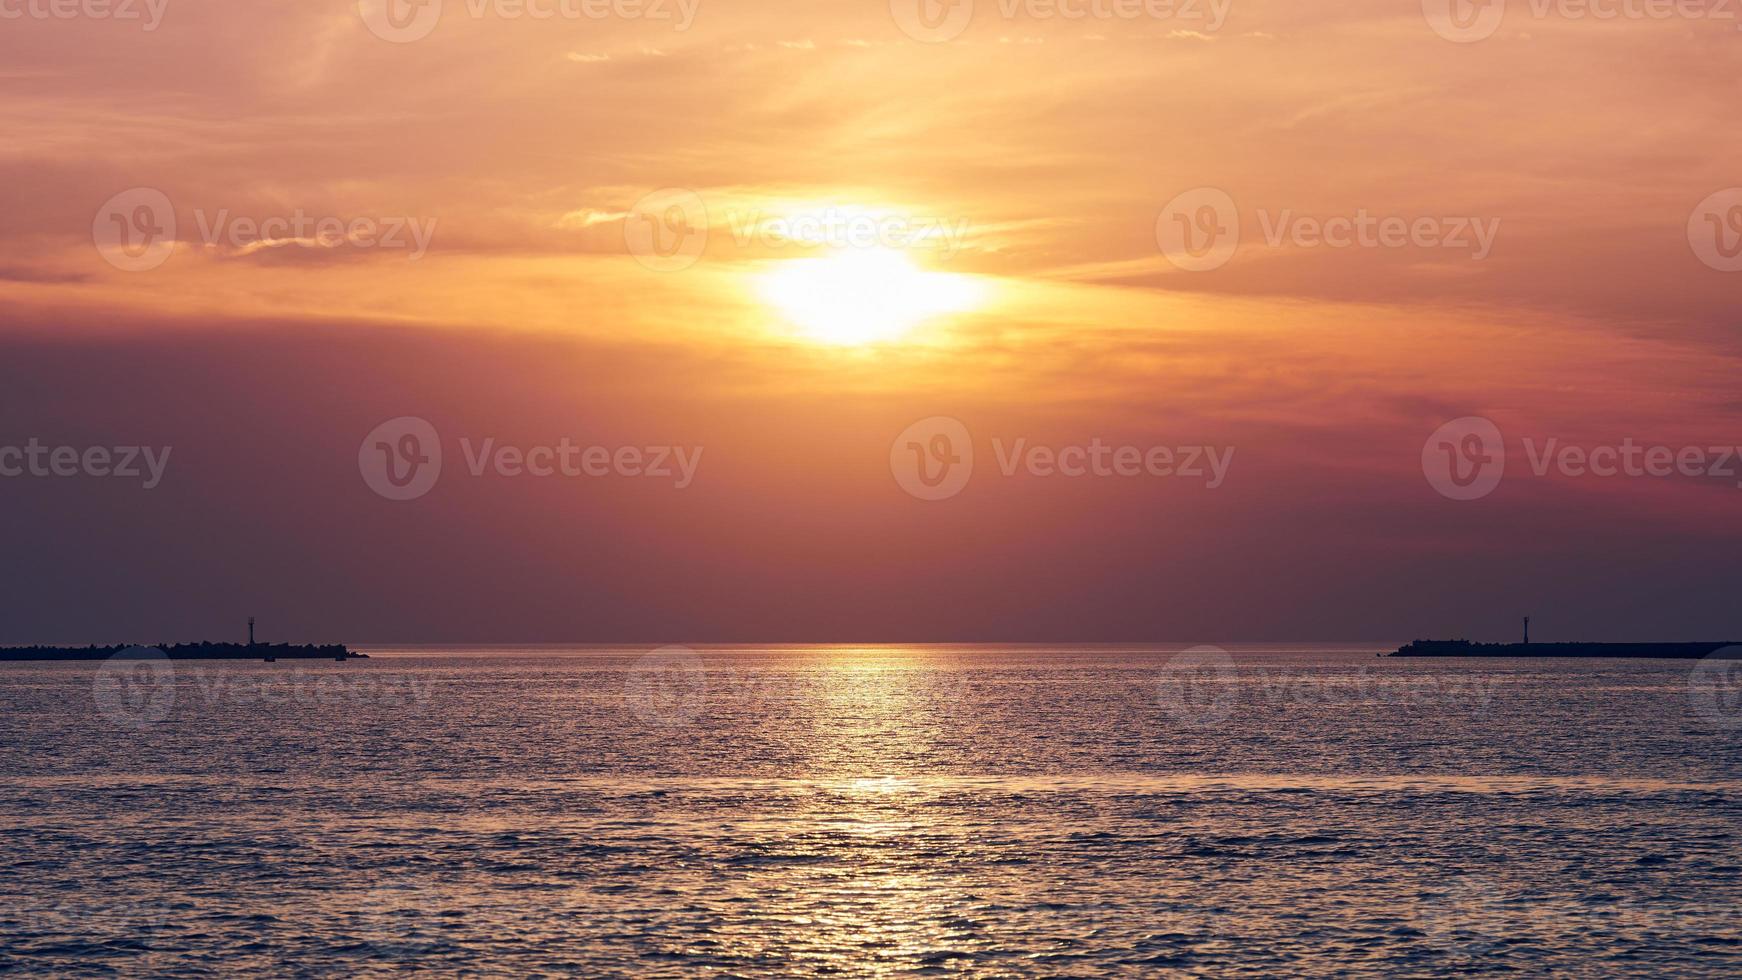 mare calmo con cielo al tramonto, splendida vista panoramica, incredibile sole che sorge drammatico riflesso nell'acqua foto